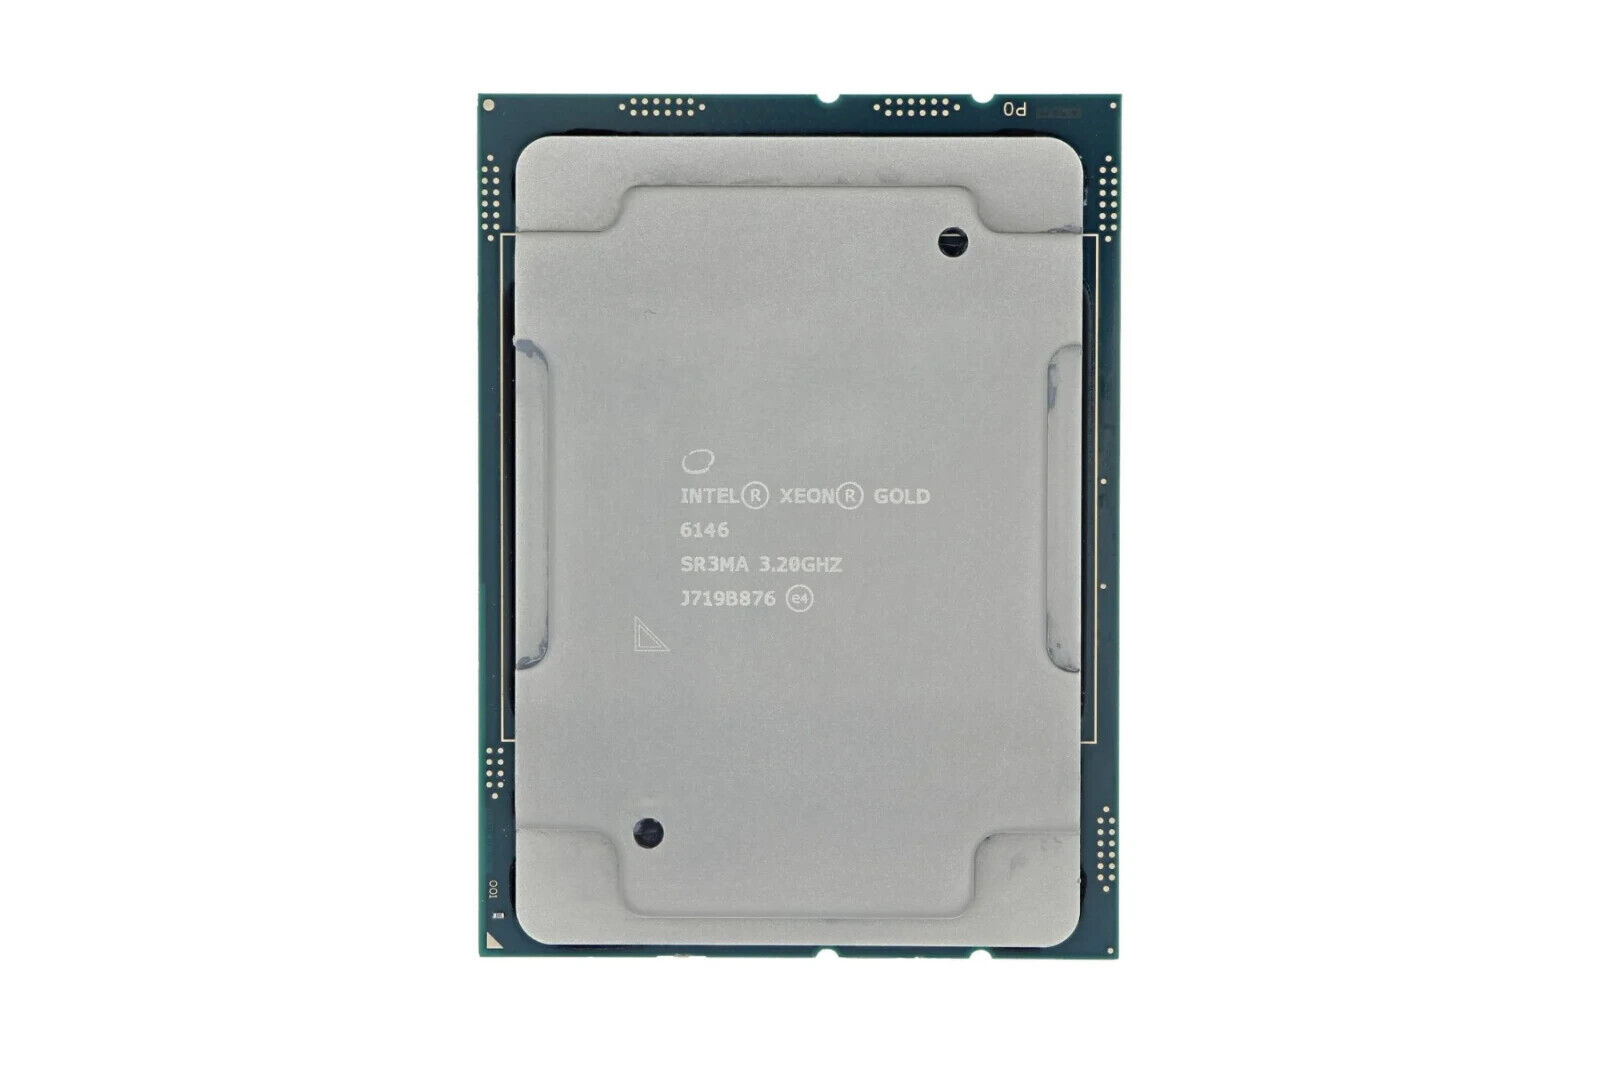 Intel Xeon Gold 6146 SR3MA  3.2GHz 12-Core LGA3647 CPU/Processor - Open Box New